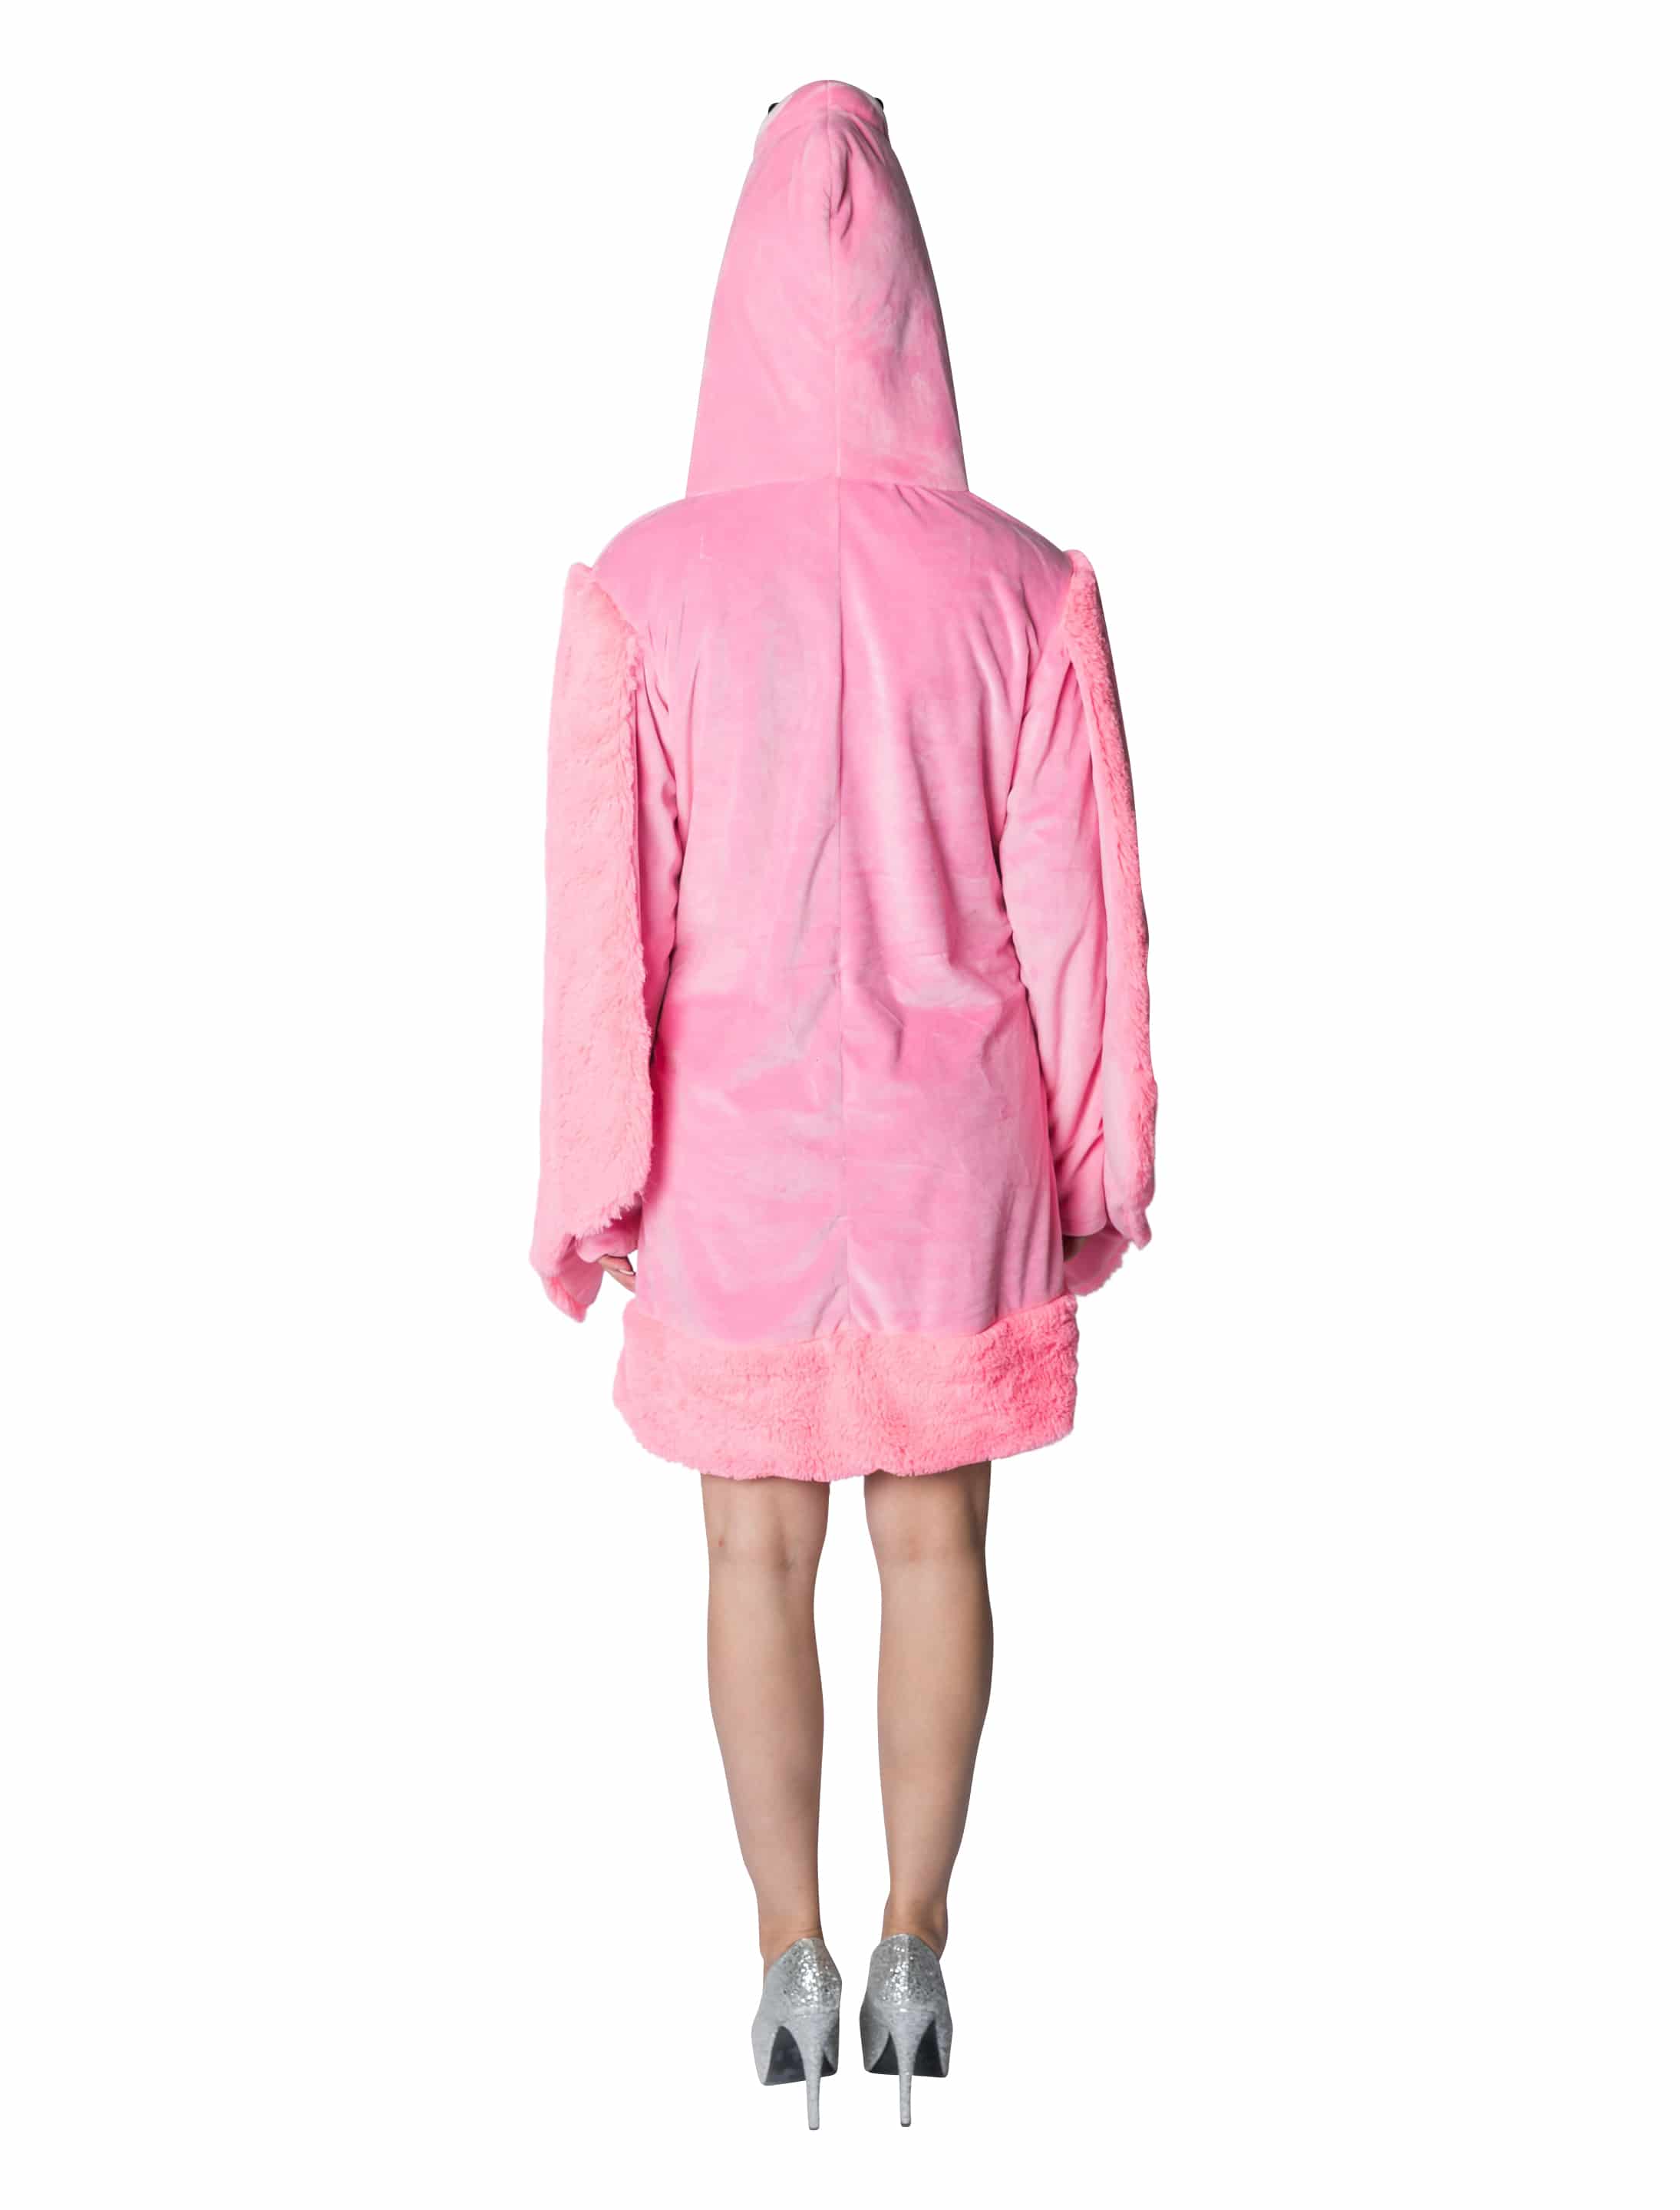 Kleid Plüsch Flamingo Damen pink 42/44